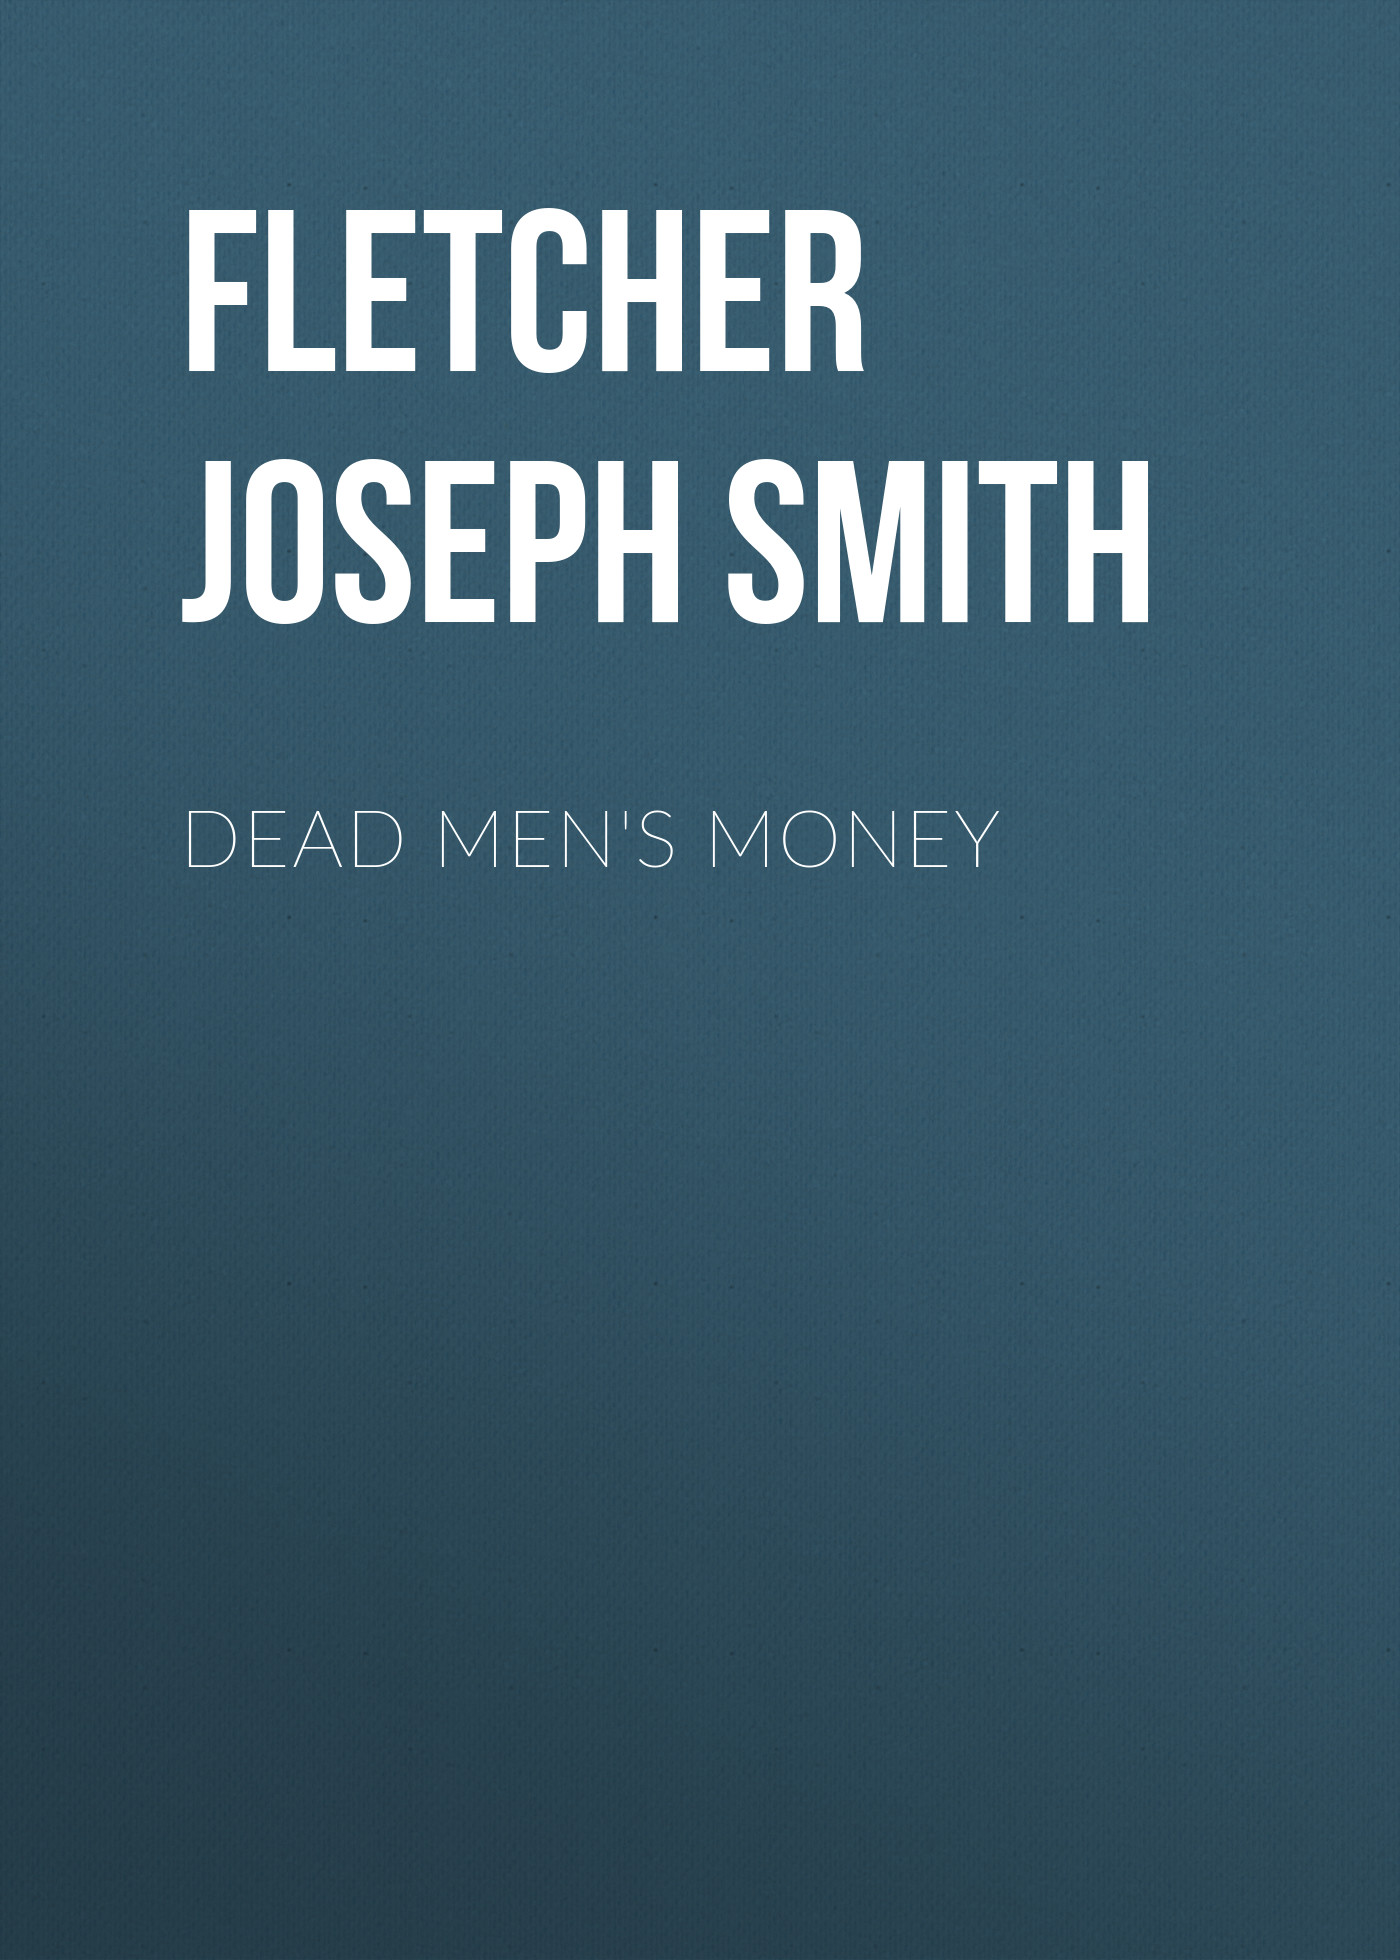 Книга Dead Men's Money из серии , созданная Joseph Fletcher, может относится к жанру Зарубежная классика, Классические детективы, Зарубежные детективы, Зарубежная старинная литература. Стоимость электронной книги Dead Men's Money с идентификатором 36363950 составляет 0 руб.